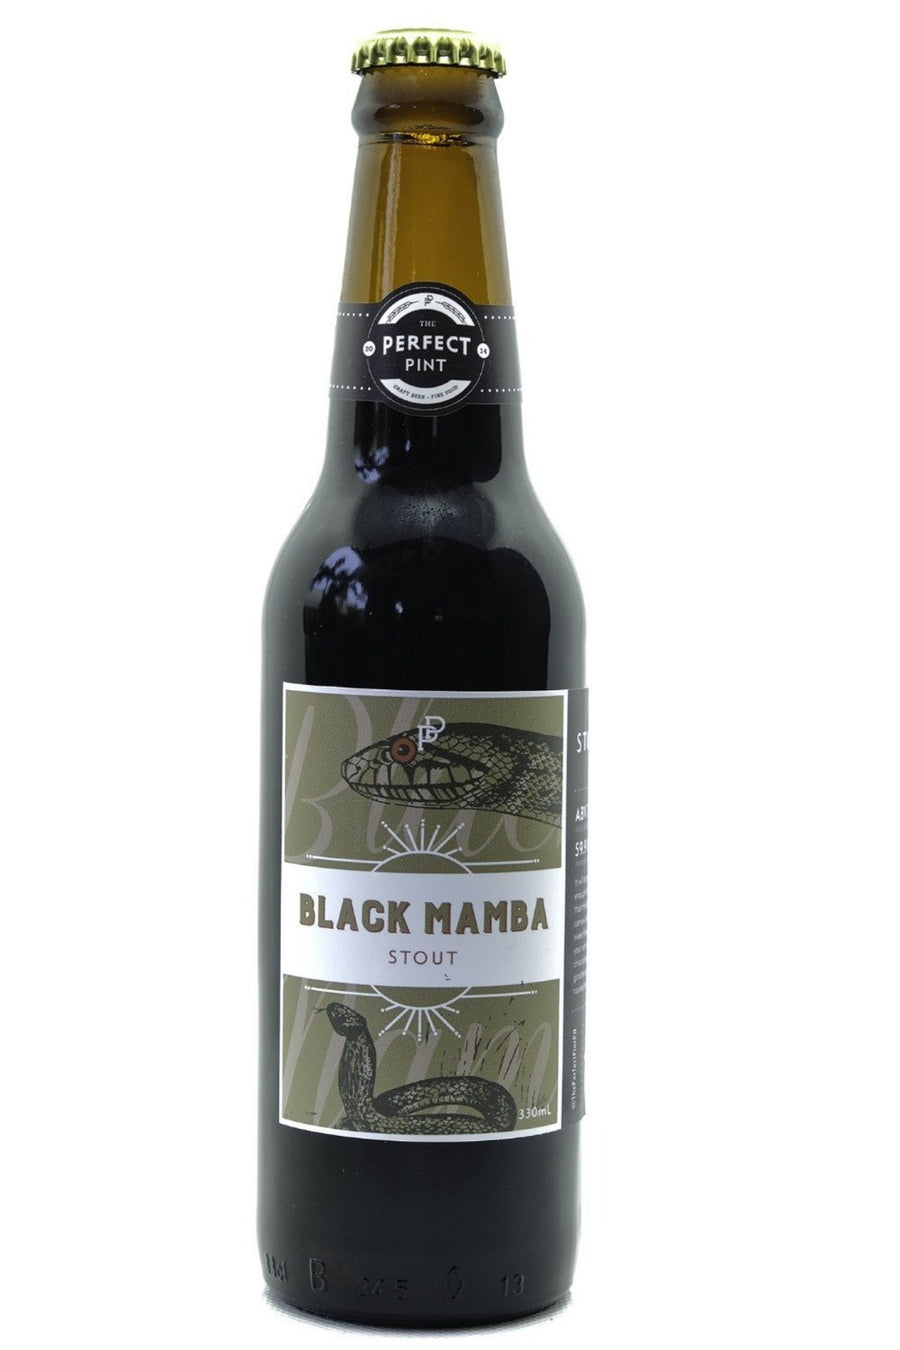 Black Mamba Stout (ABV 7.0%, 59.9 IBU)